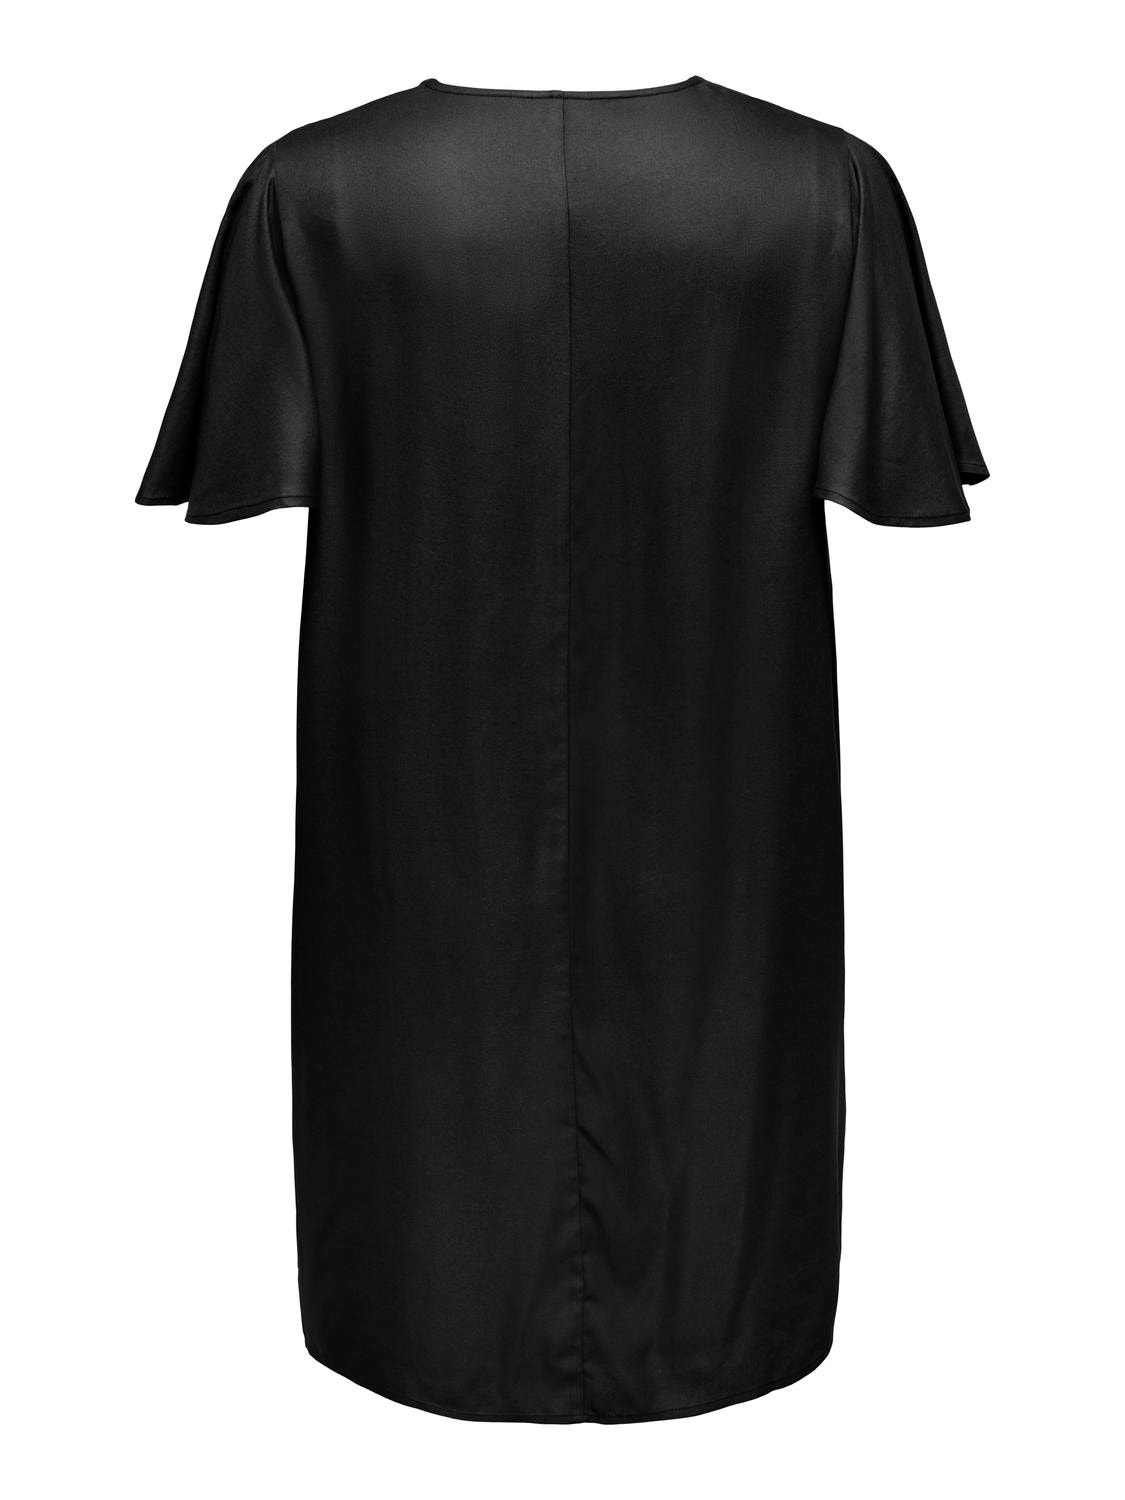 ONLY Loose Fit V-Neck Short dress -Black - 15306702